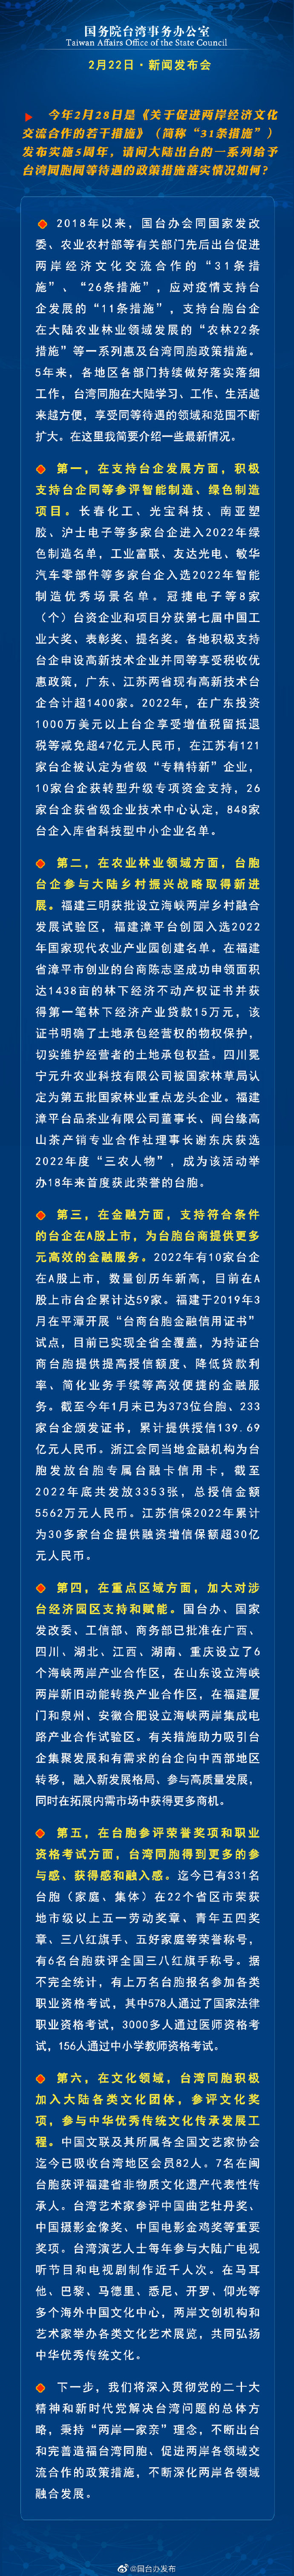 国务院台湾事务办公室2月22日·新闻发布会